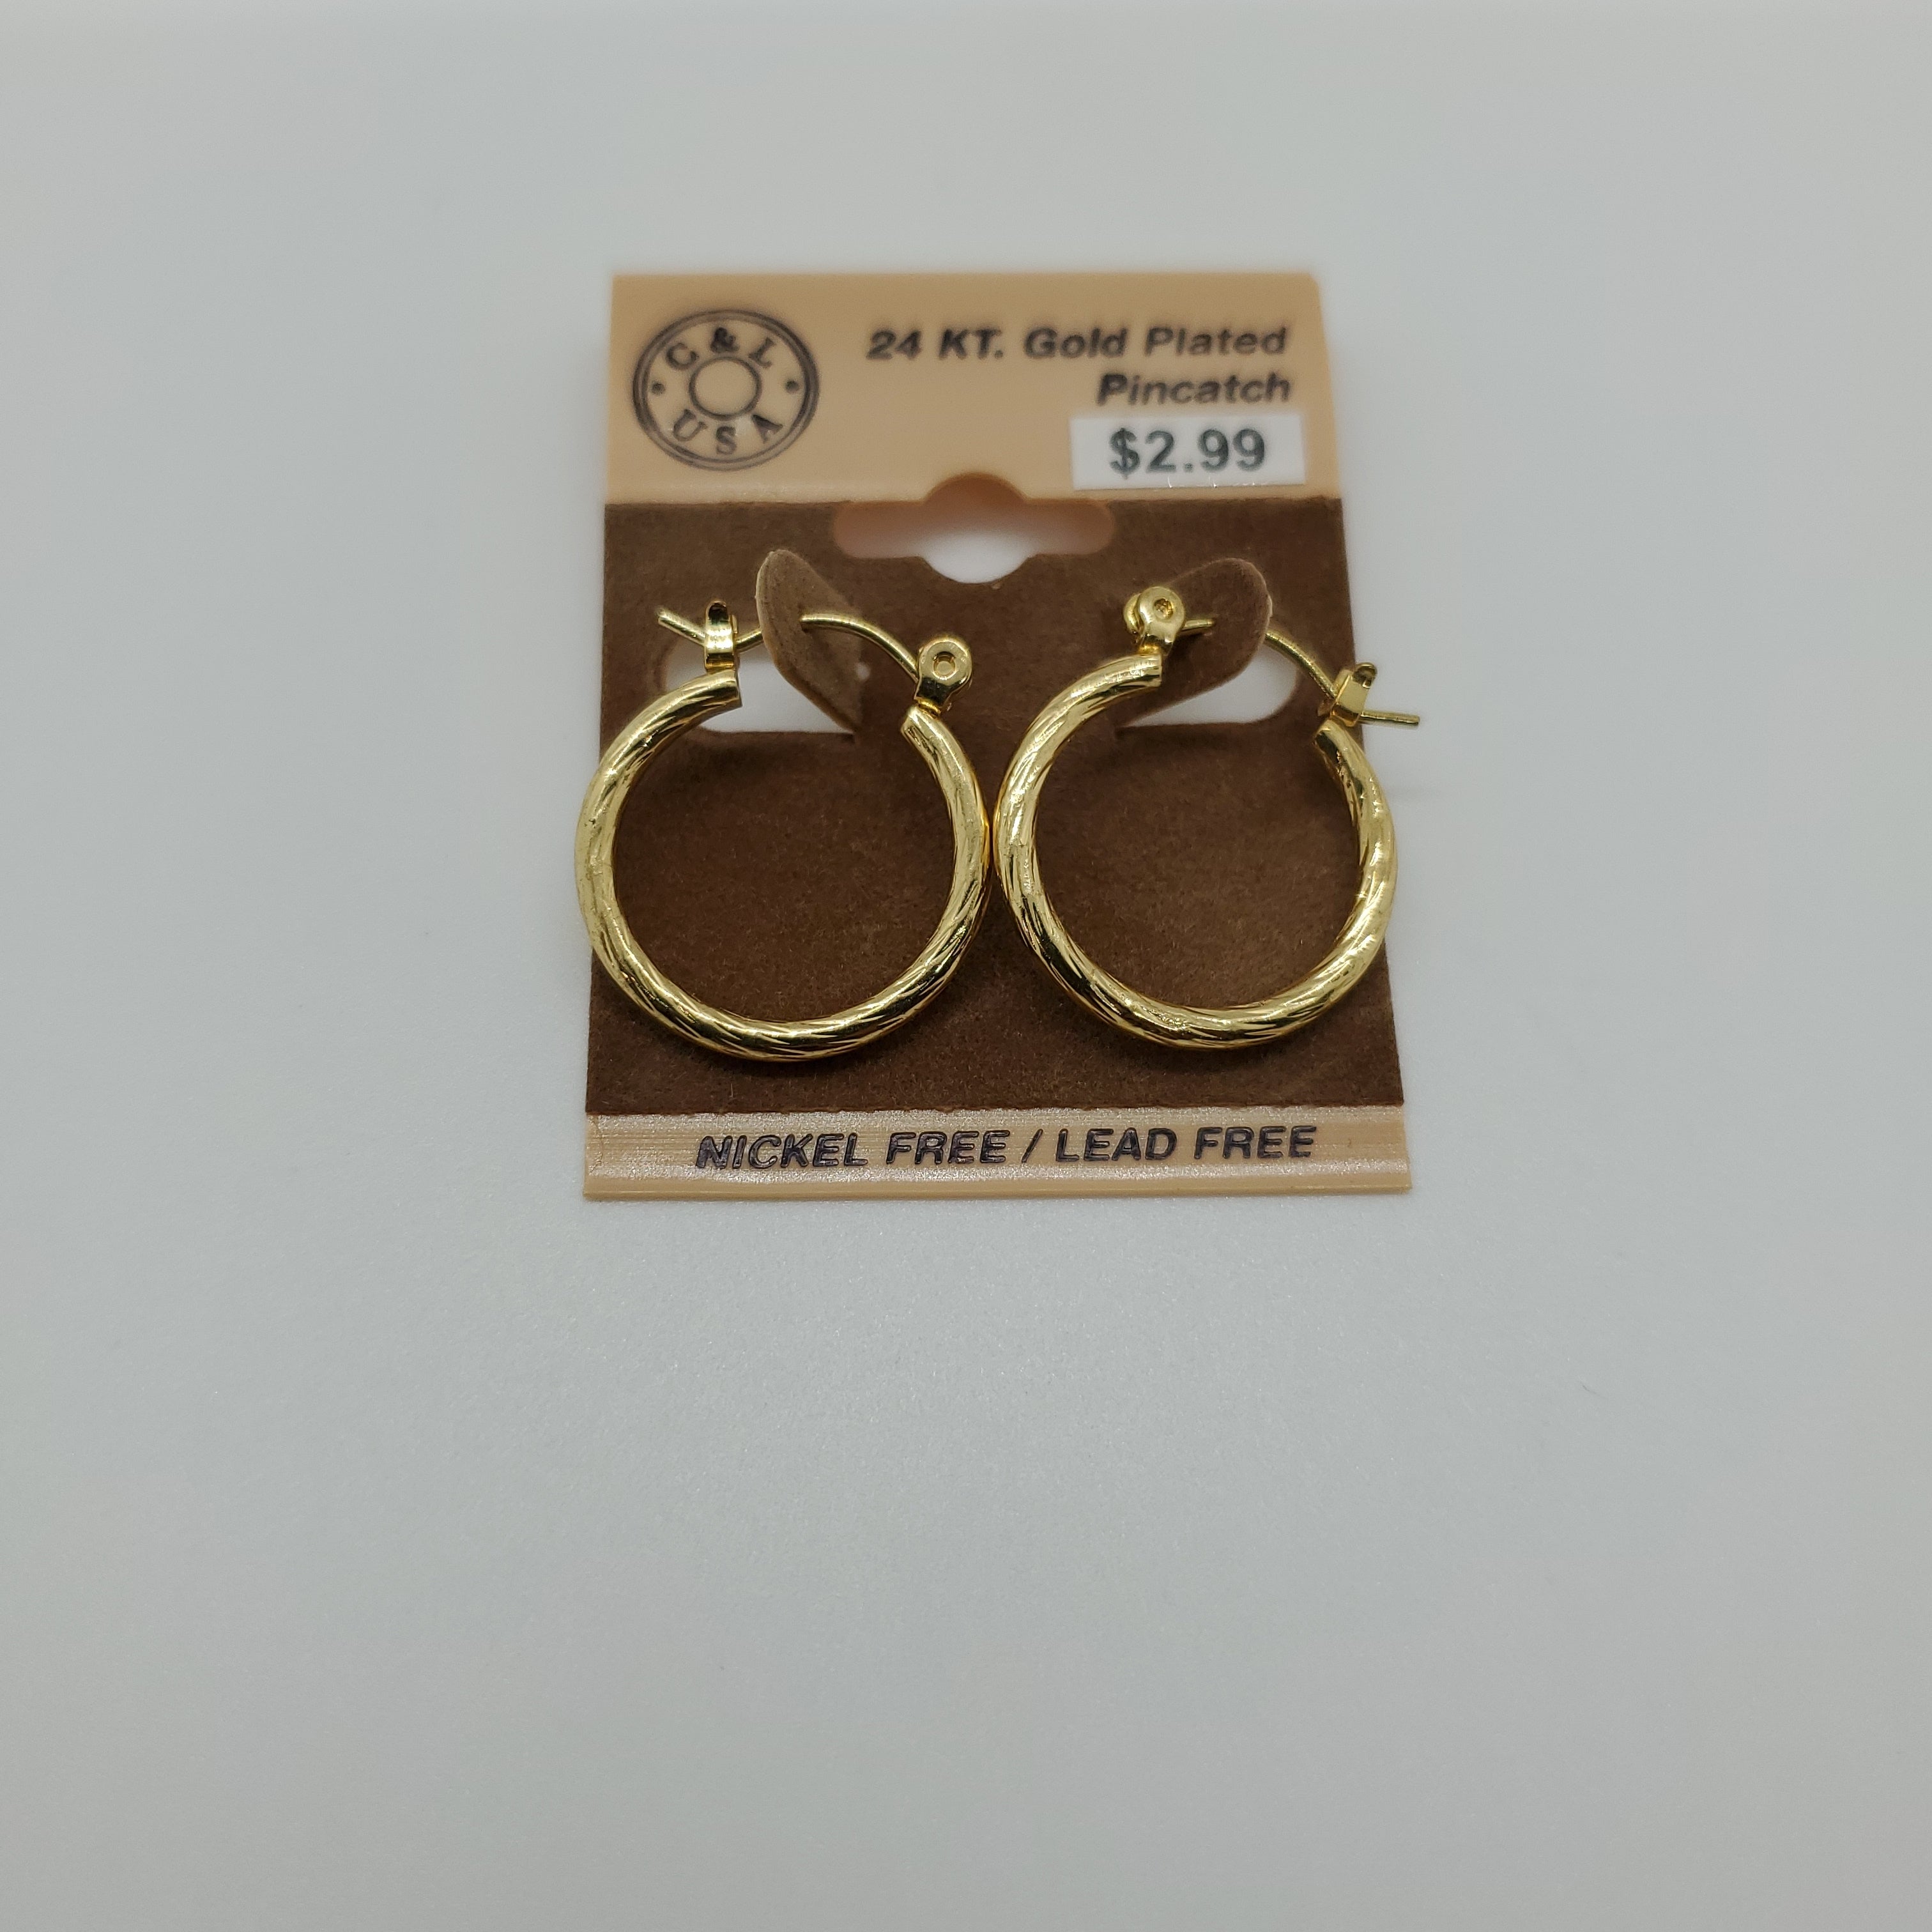 24KT Gold Plated Pincatch Hoop Earrings NPK106 - Beauty Bar & Supply